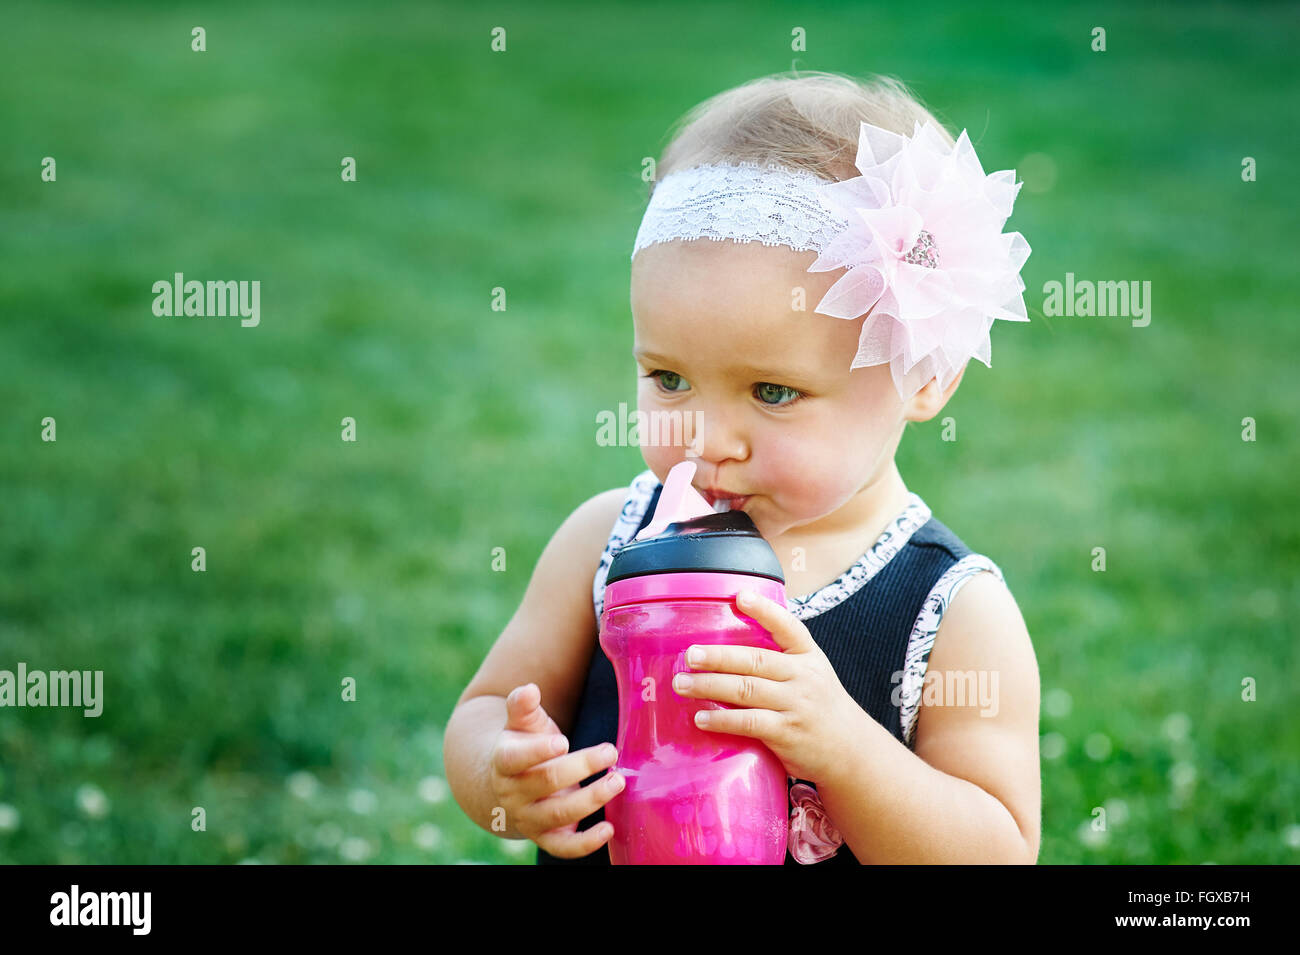 Felice bambina giocando in prato estivo sull'erba Foto Stock